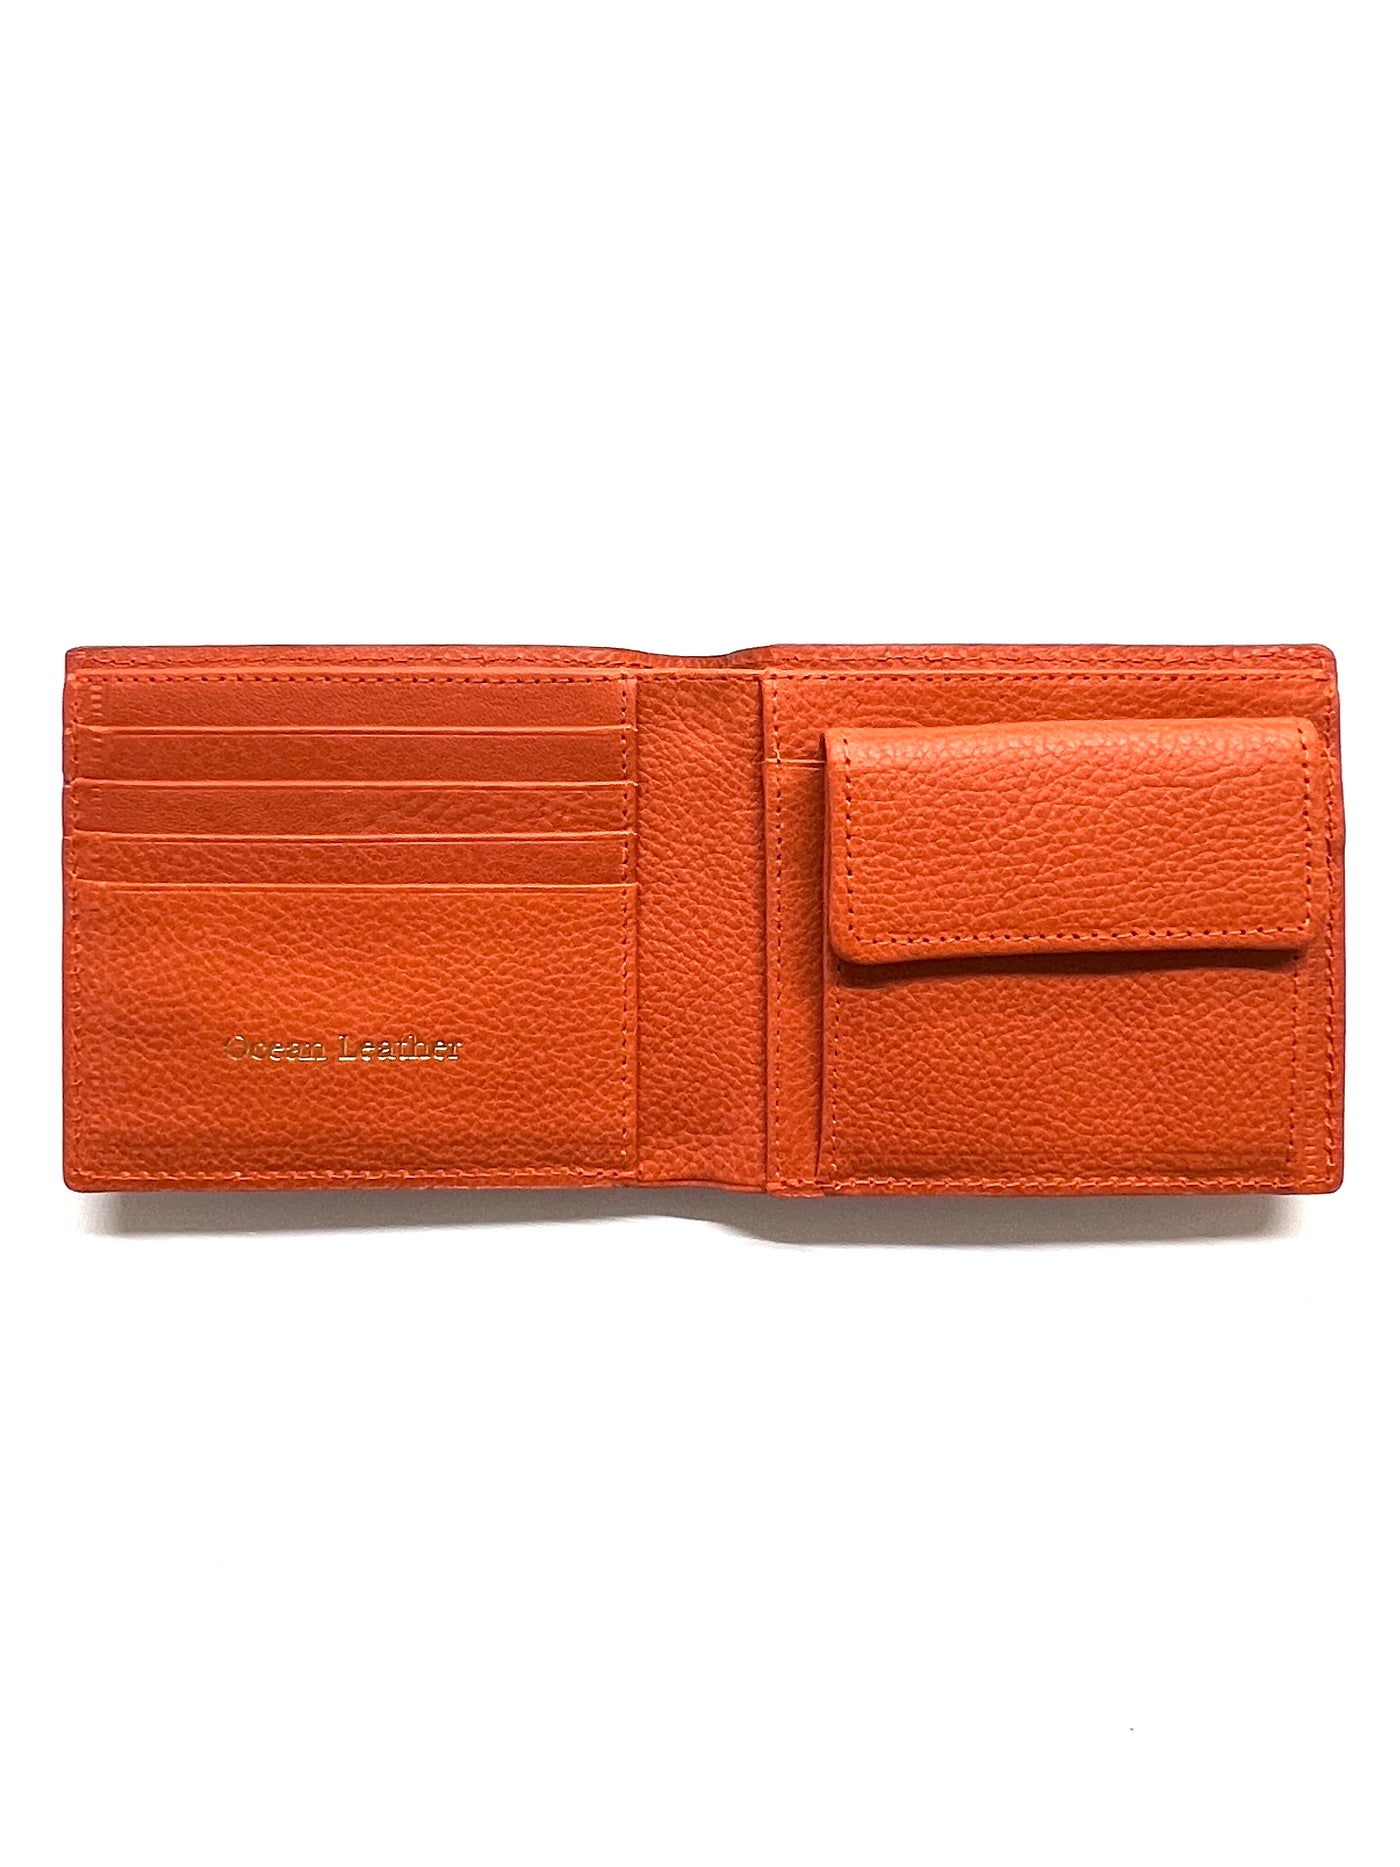 二つ折り財布【ブリ】 - Ocean Leather